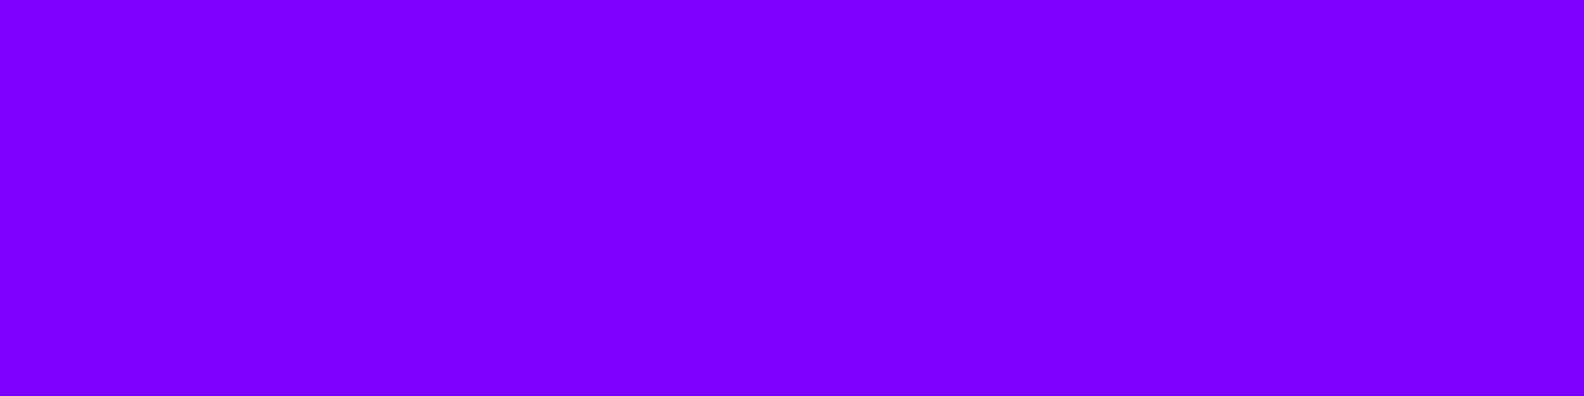 1584x396 Violet Color Wheel Solid Color Background